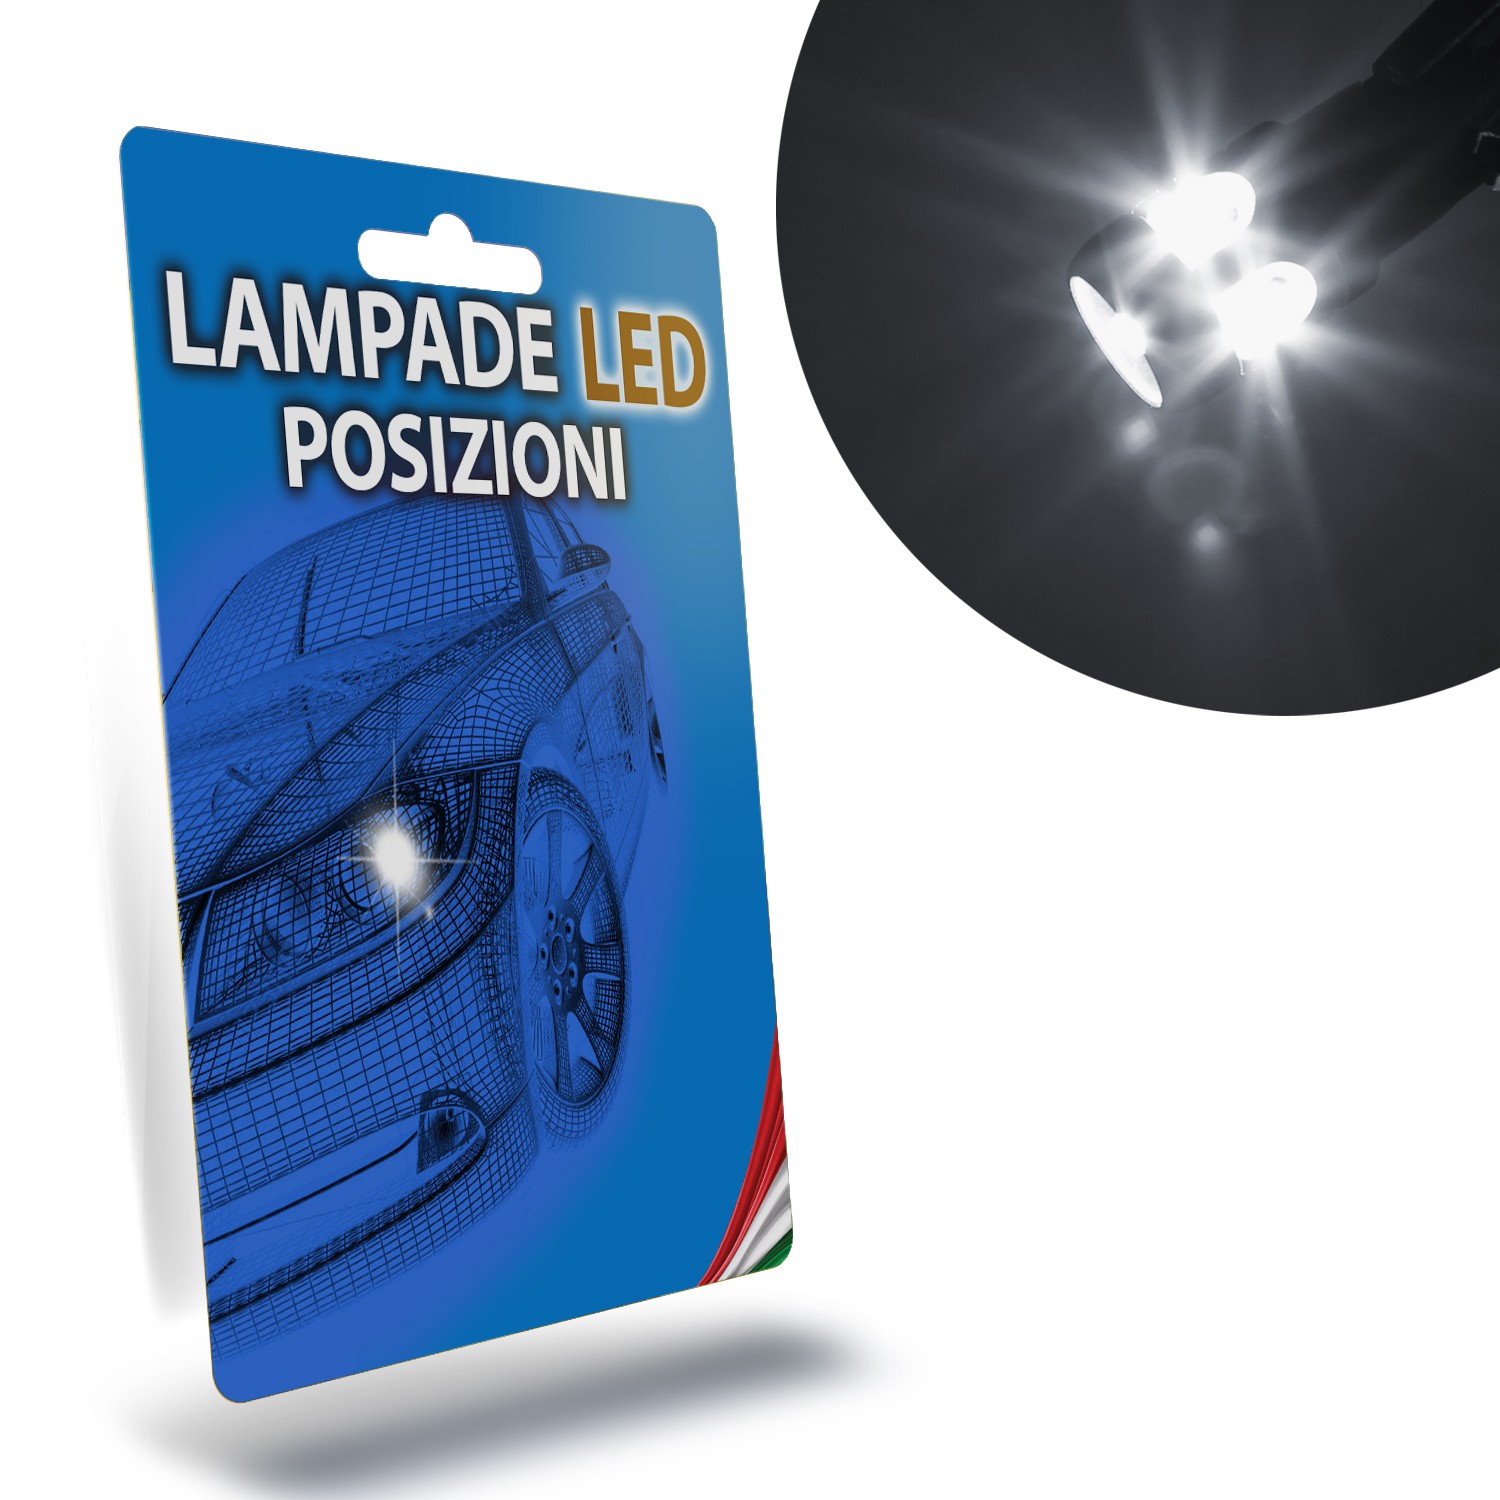 Lampade LED con funzioni speciali